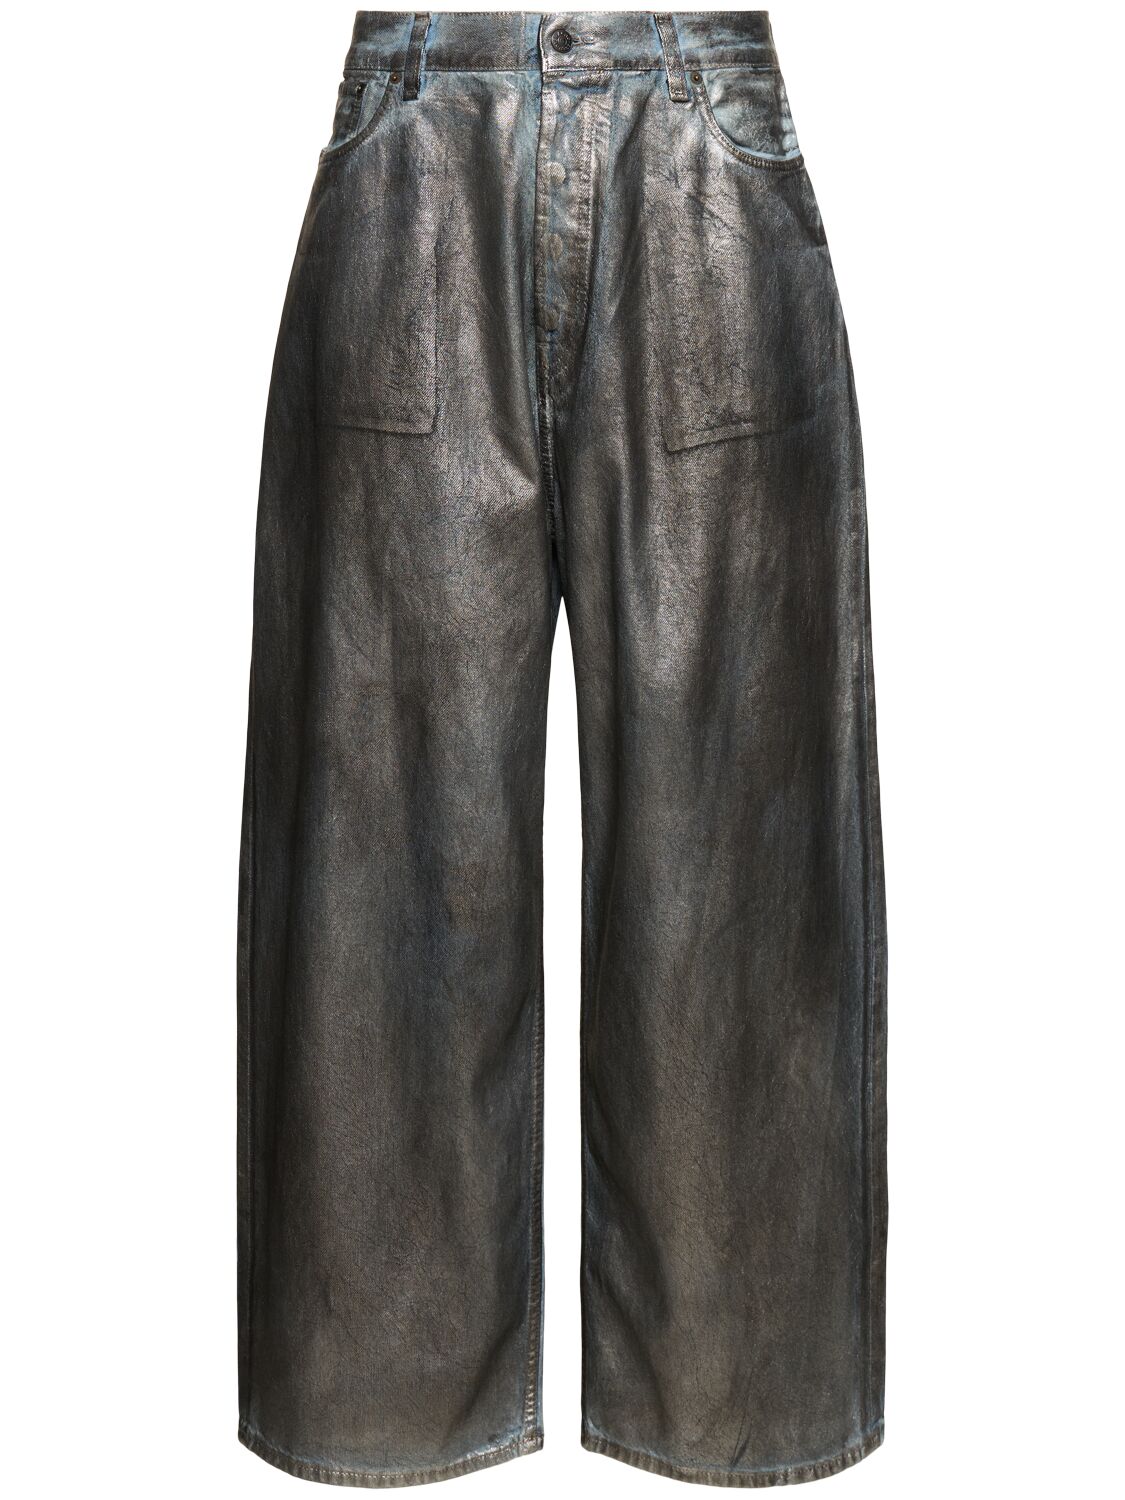 Image of Lunar Coated Cotton Denim Jeans